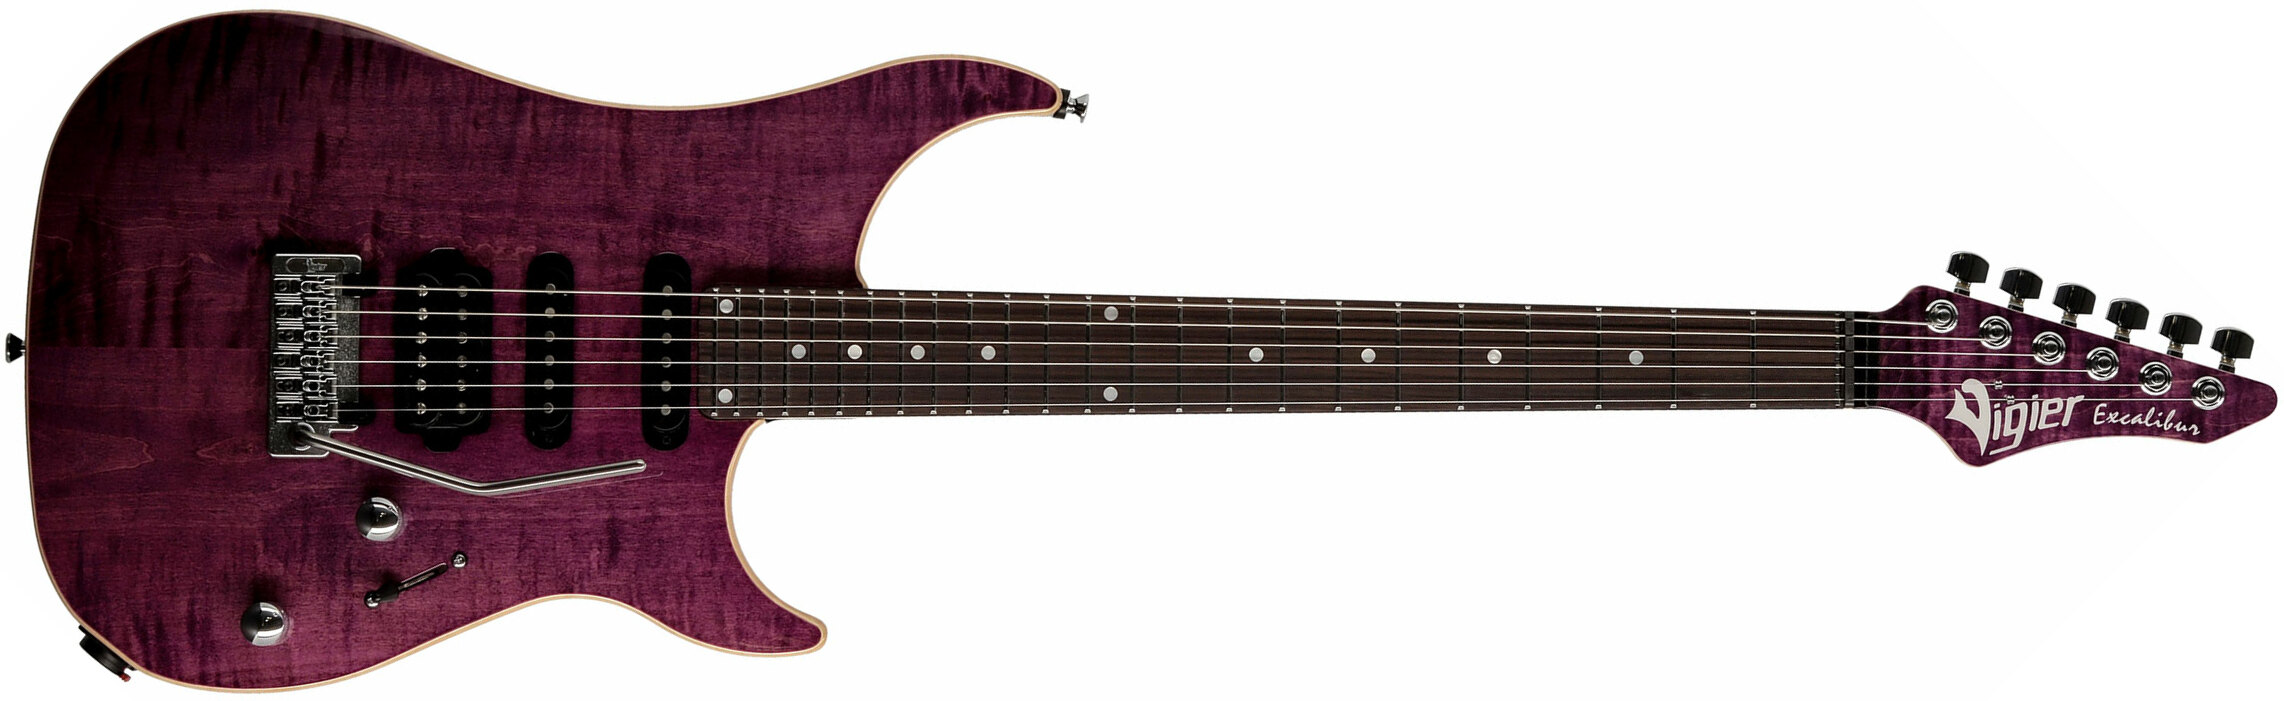 Vigier Excalibur Ultra Blues Hss Trem Rw - Amethyst Purple - Guitare Électrique Forme Str - Main picture